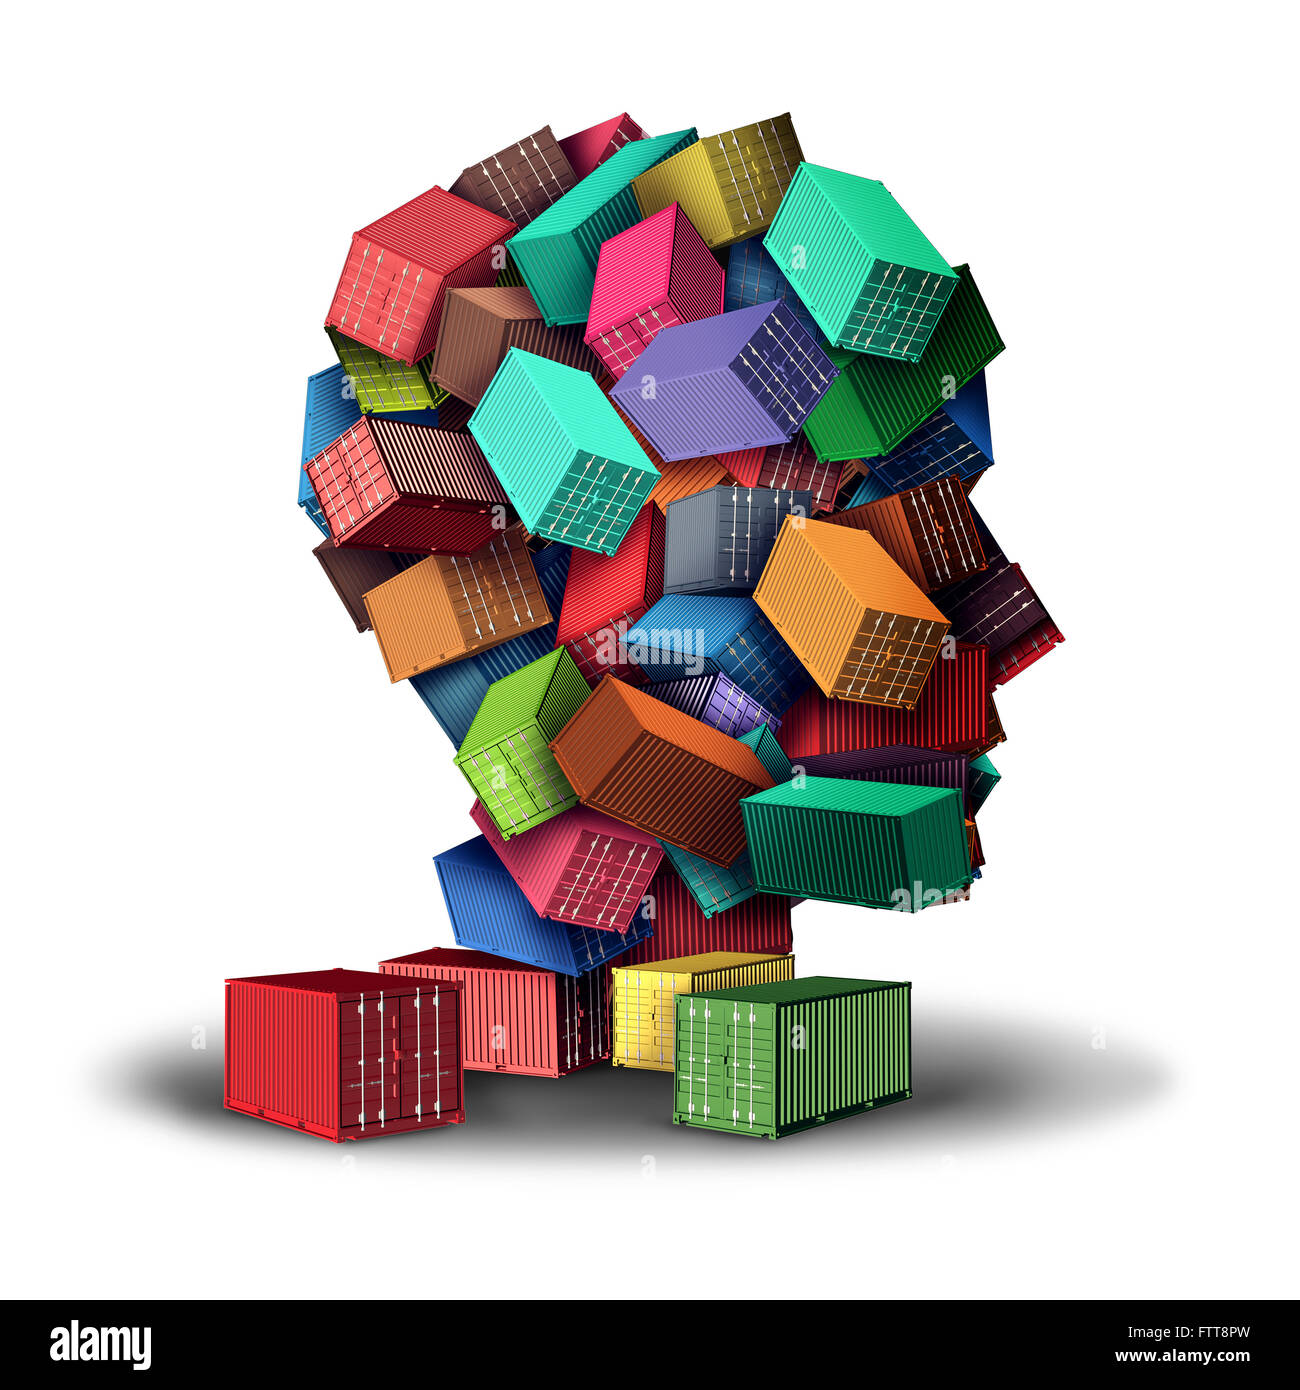 Cargo Fracht Strategiekonzept 3D-Illustration und intelligente Sendung Symbol als eine Gruppe von Transport Container gestapelt in der Form eines menschlichen Kopfes als Symbol für die Planung von export und import Vertrieb. Stockfoto